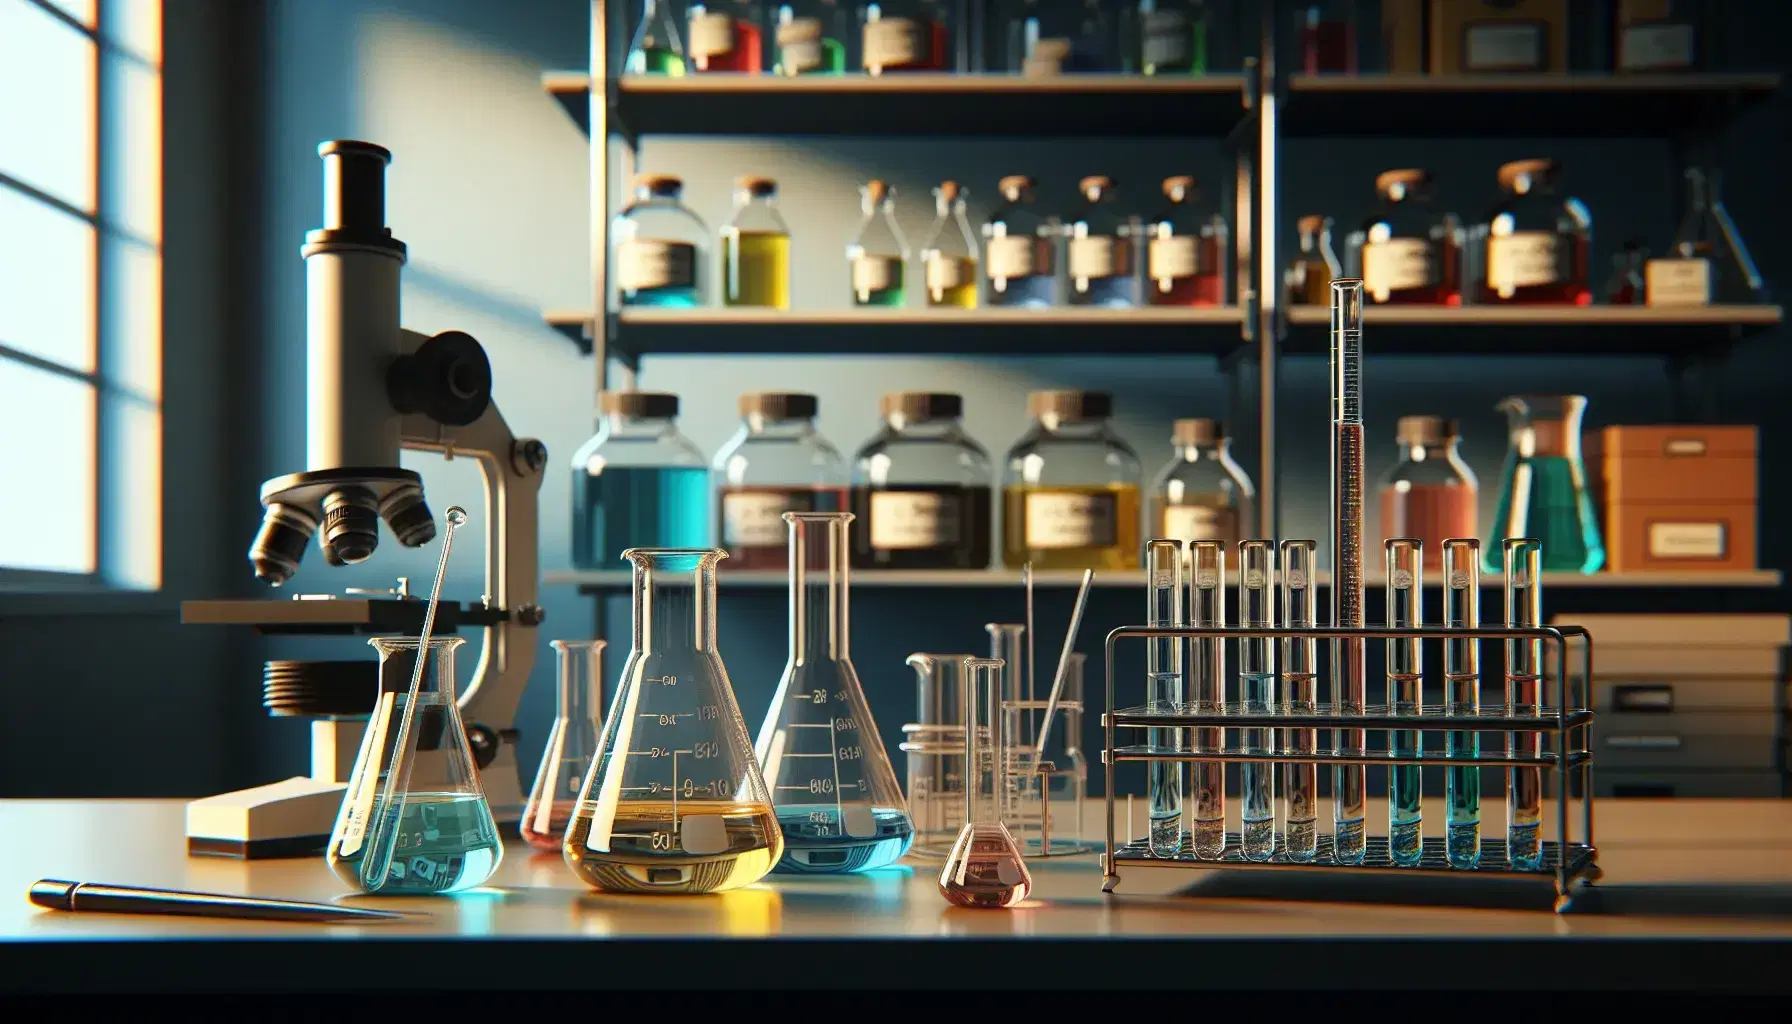 Laboratorio de química con matraces Erlenmeyer de líquidos coloridos, tubo de ensayo en soporte metálico, pipeta en vaso de precipitados y microscopio al fondo.